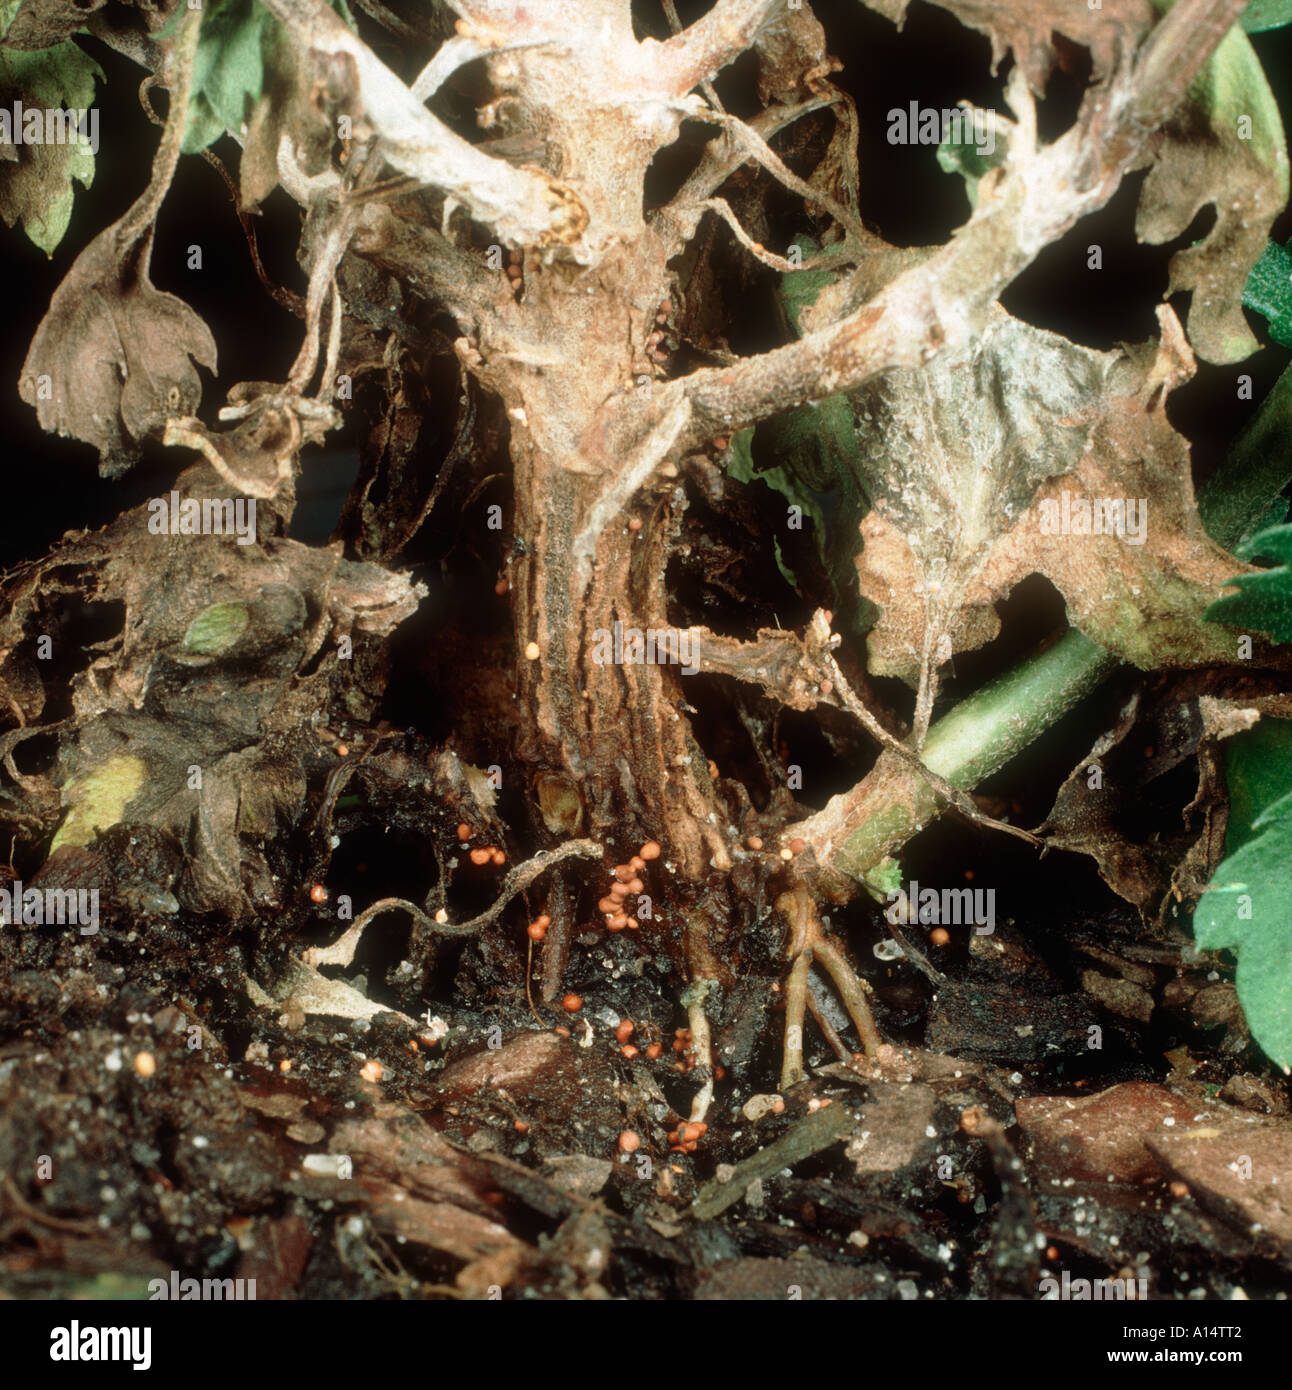 Stängelfäule (Athelia rolfsii) auf Chrysantheme Topfpflanze Stockfoto